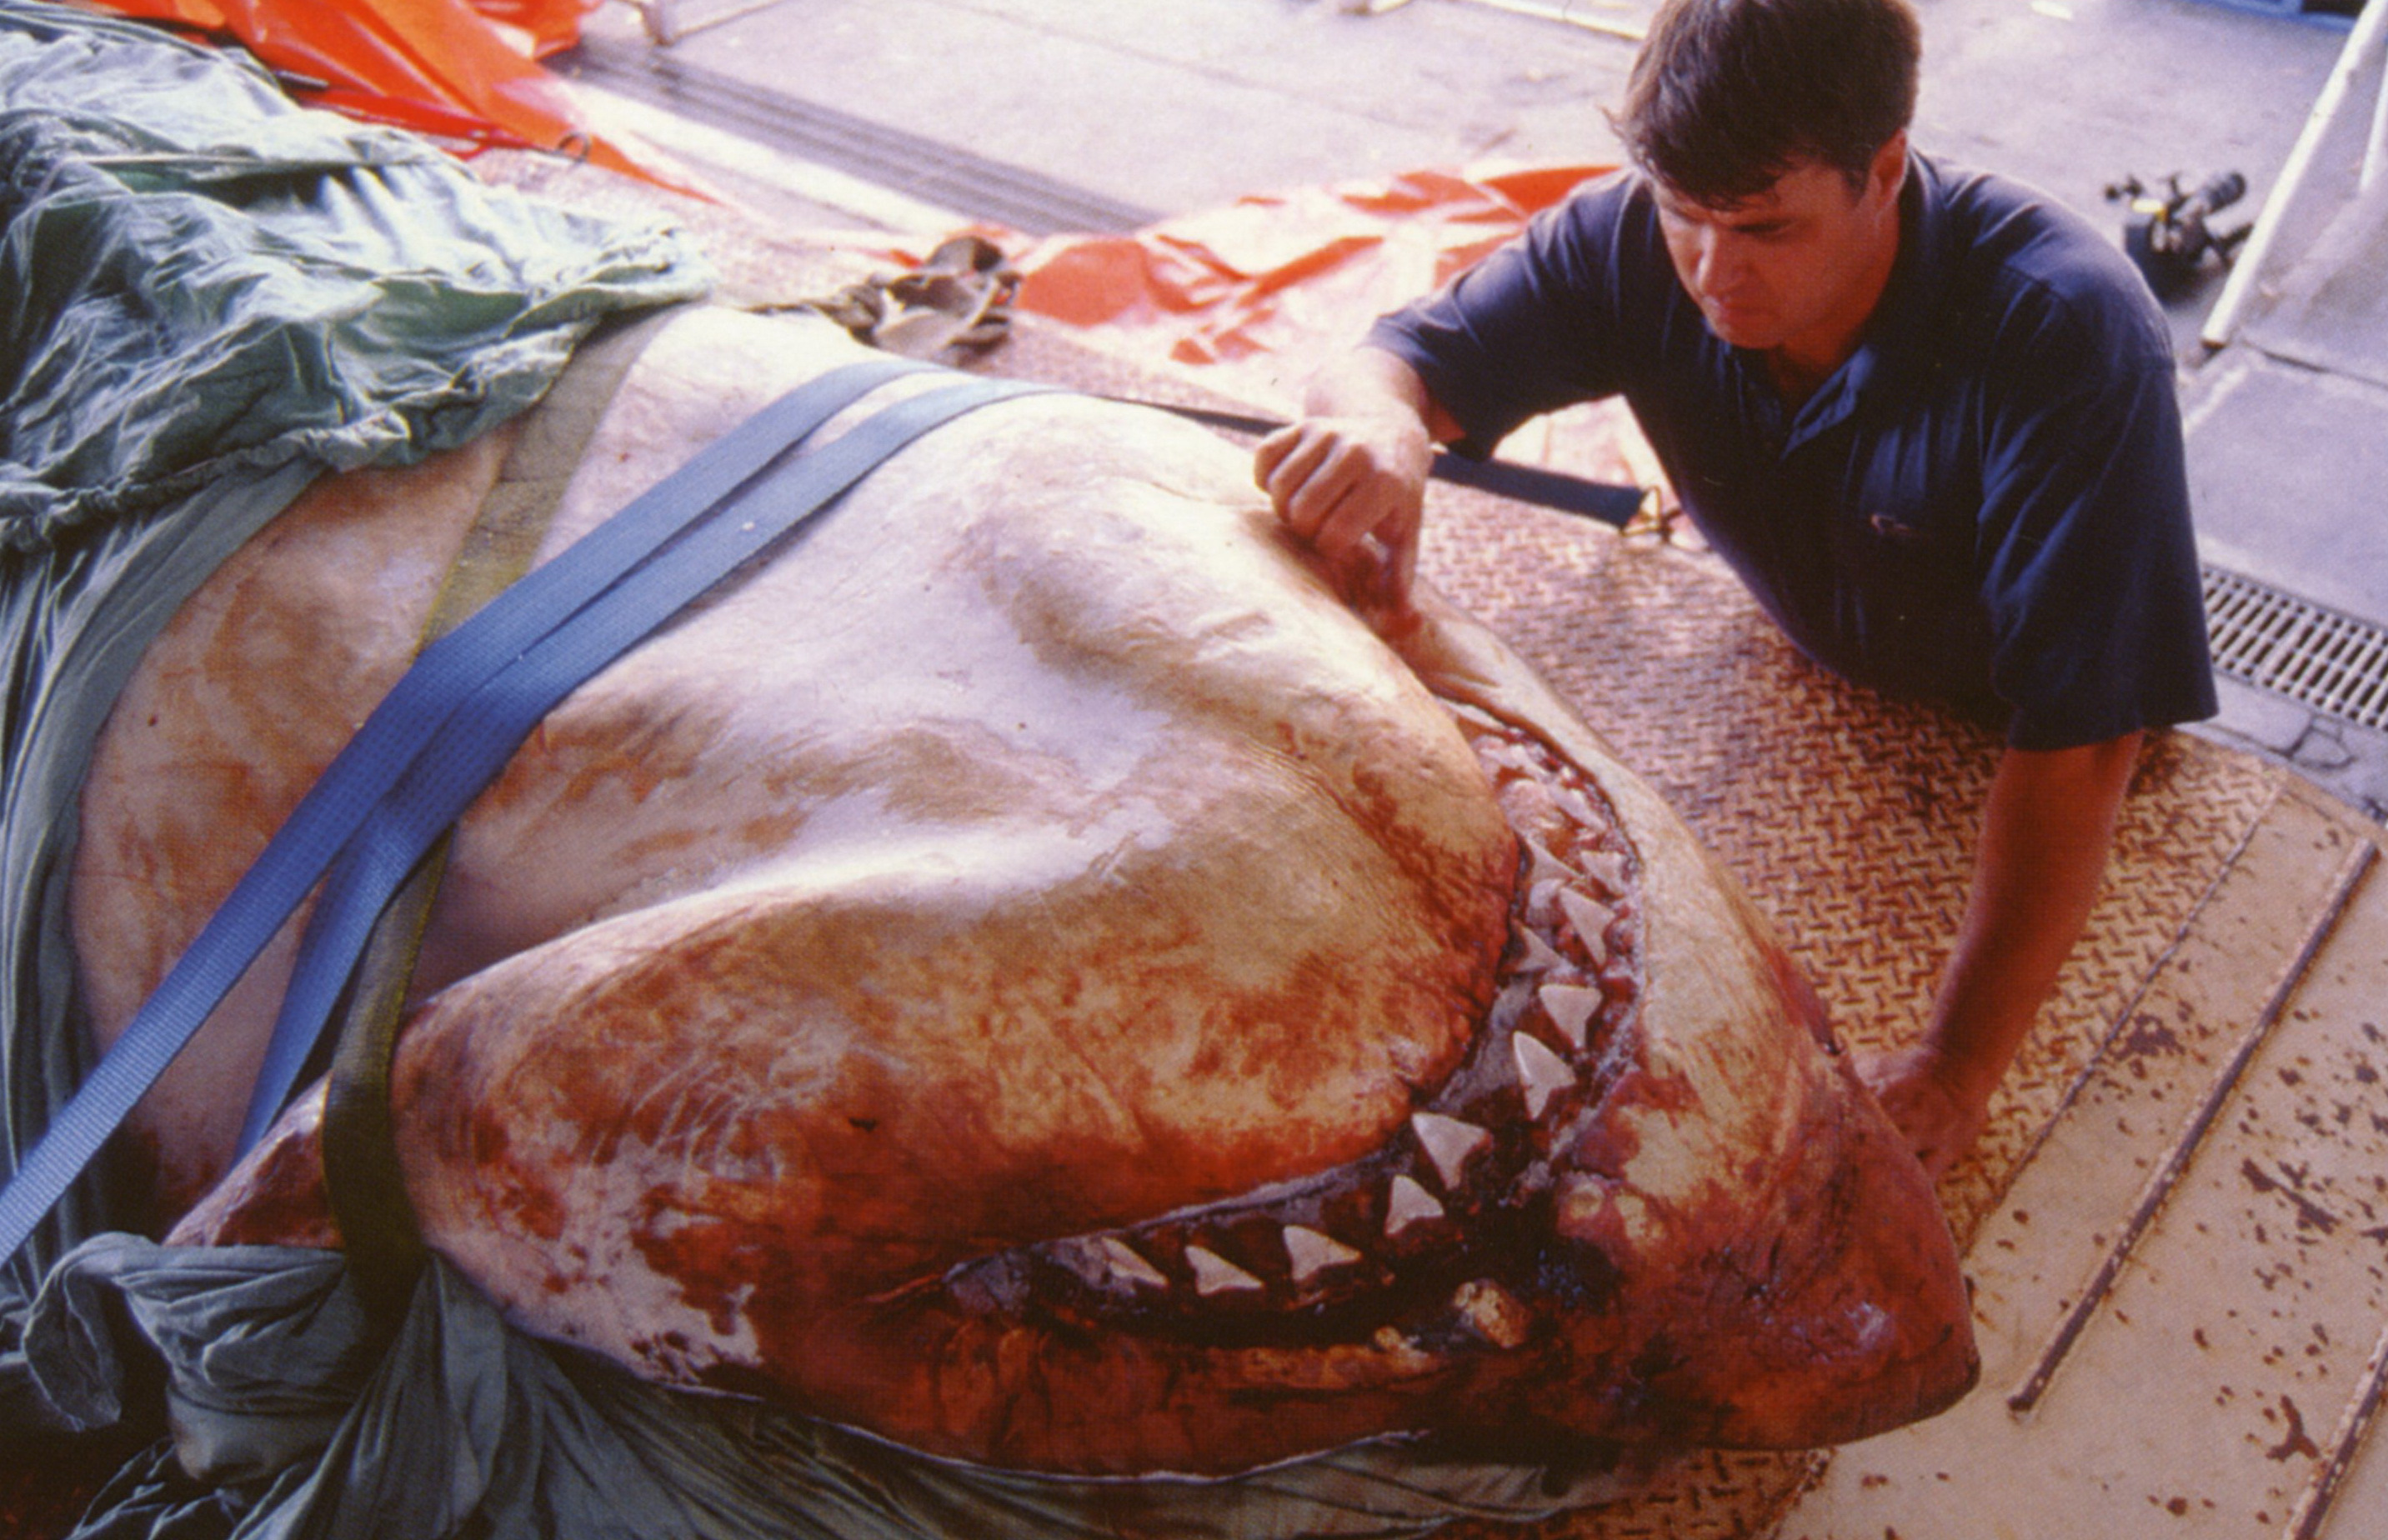 Andrew Fox examining a dead great white shark. Photo courtesy of Andrew Fox